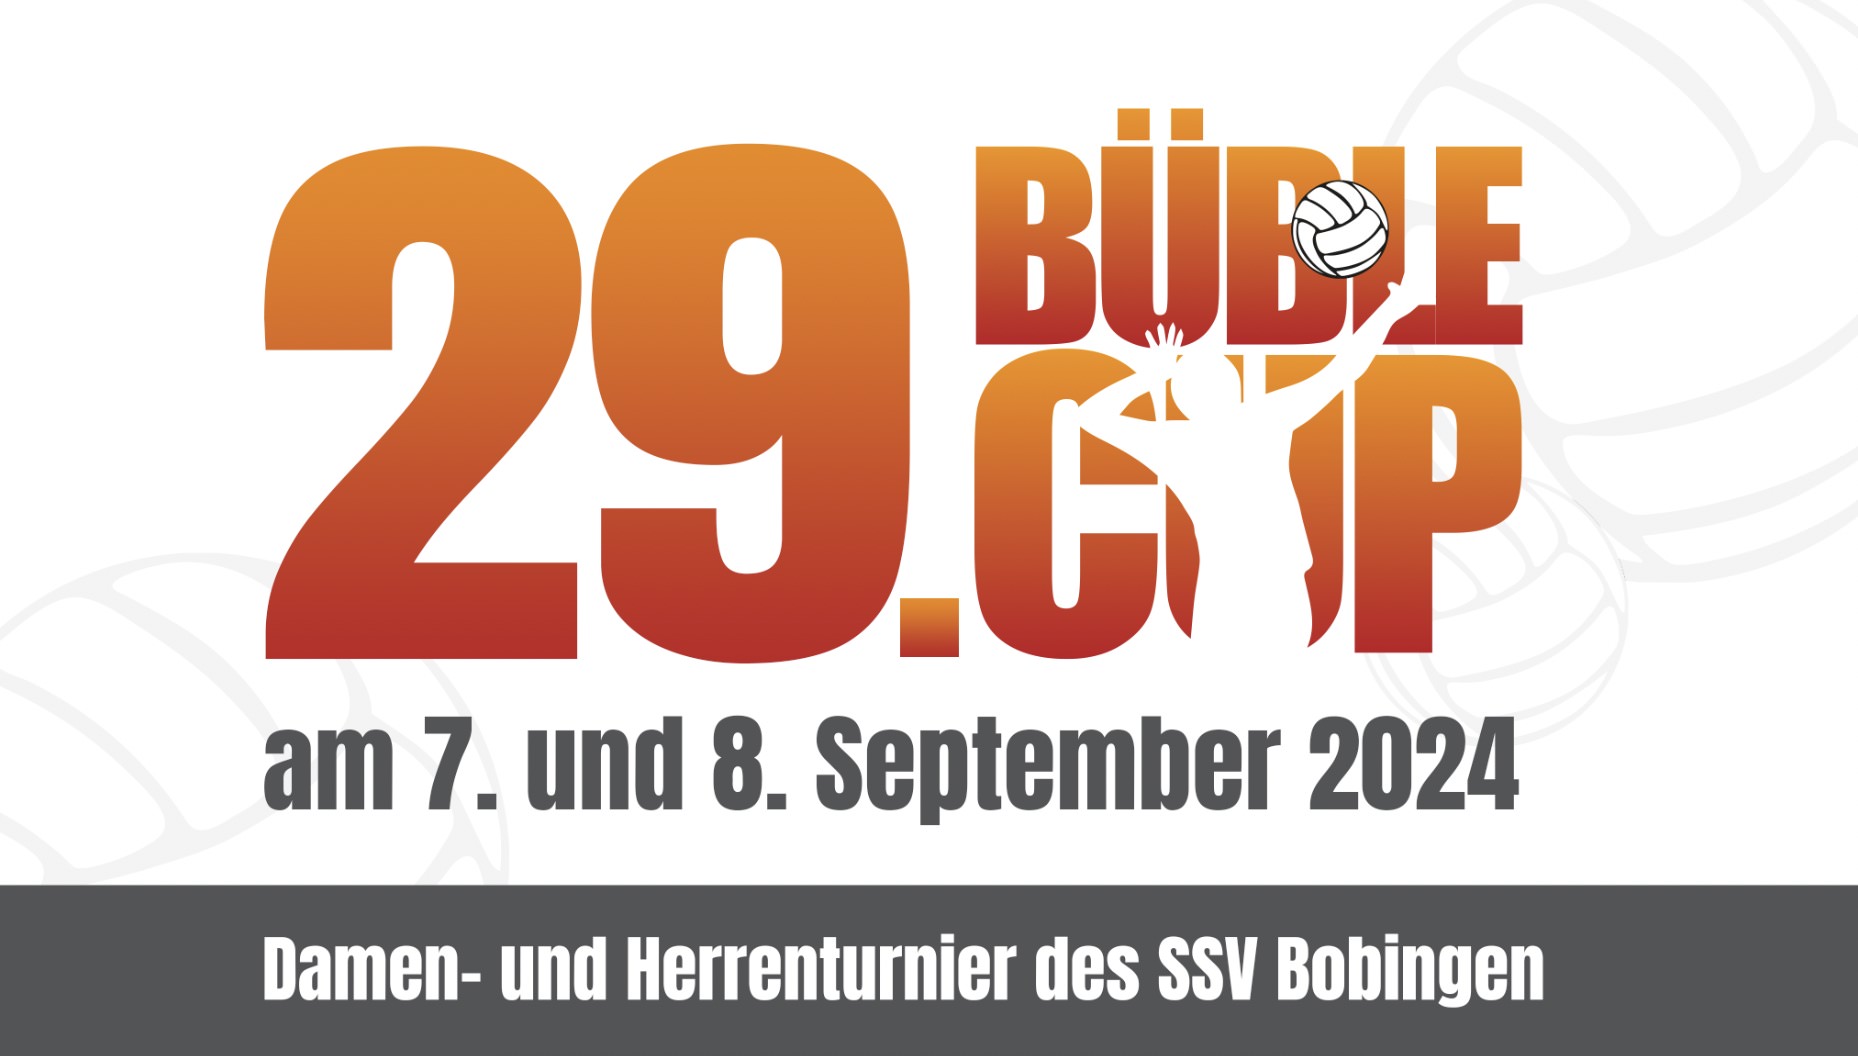 Der Büble Cup: Volleyball, Spaß und Gemeinschaft in Bobingen – ANMELDUNG GEÖFFNET